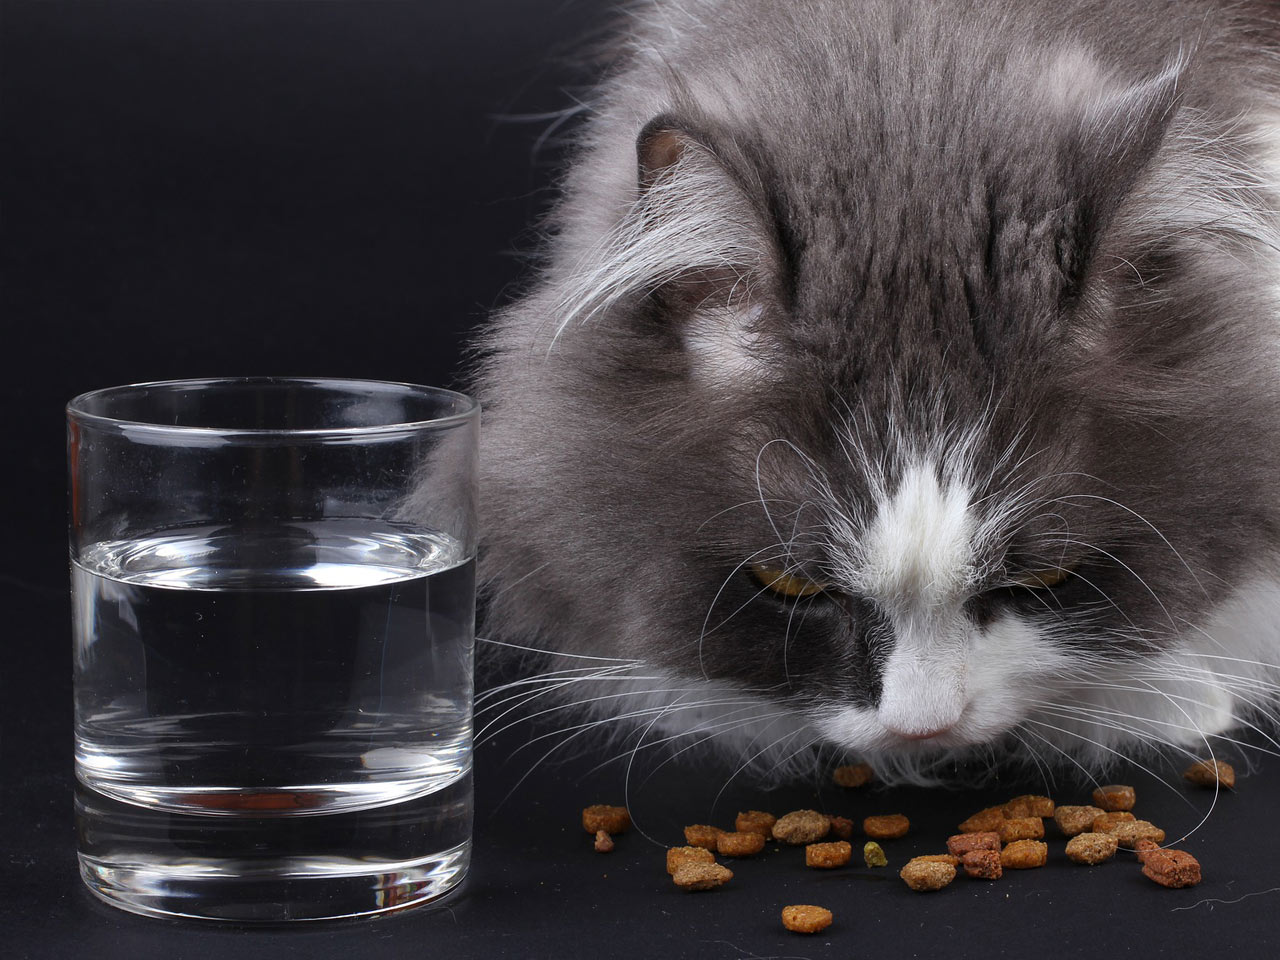 Szaro-biały kot spożywający suchą karmę obok szklanki wody.